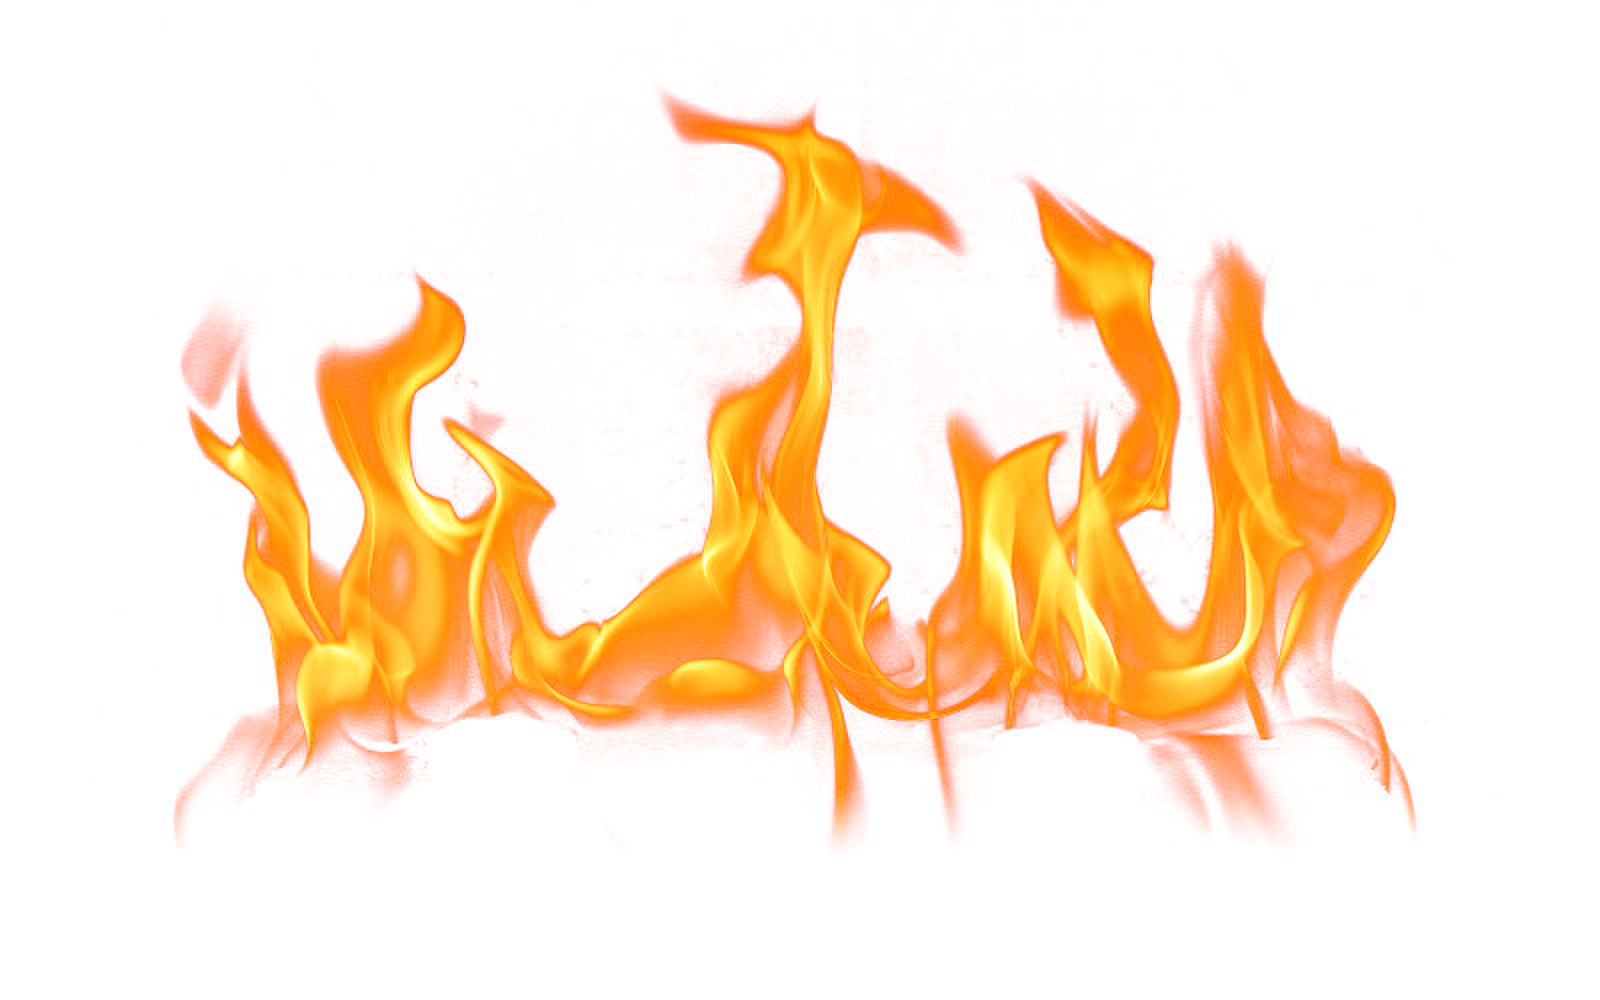 Hot fire